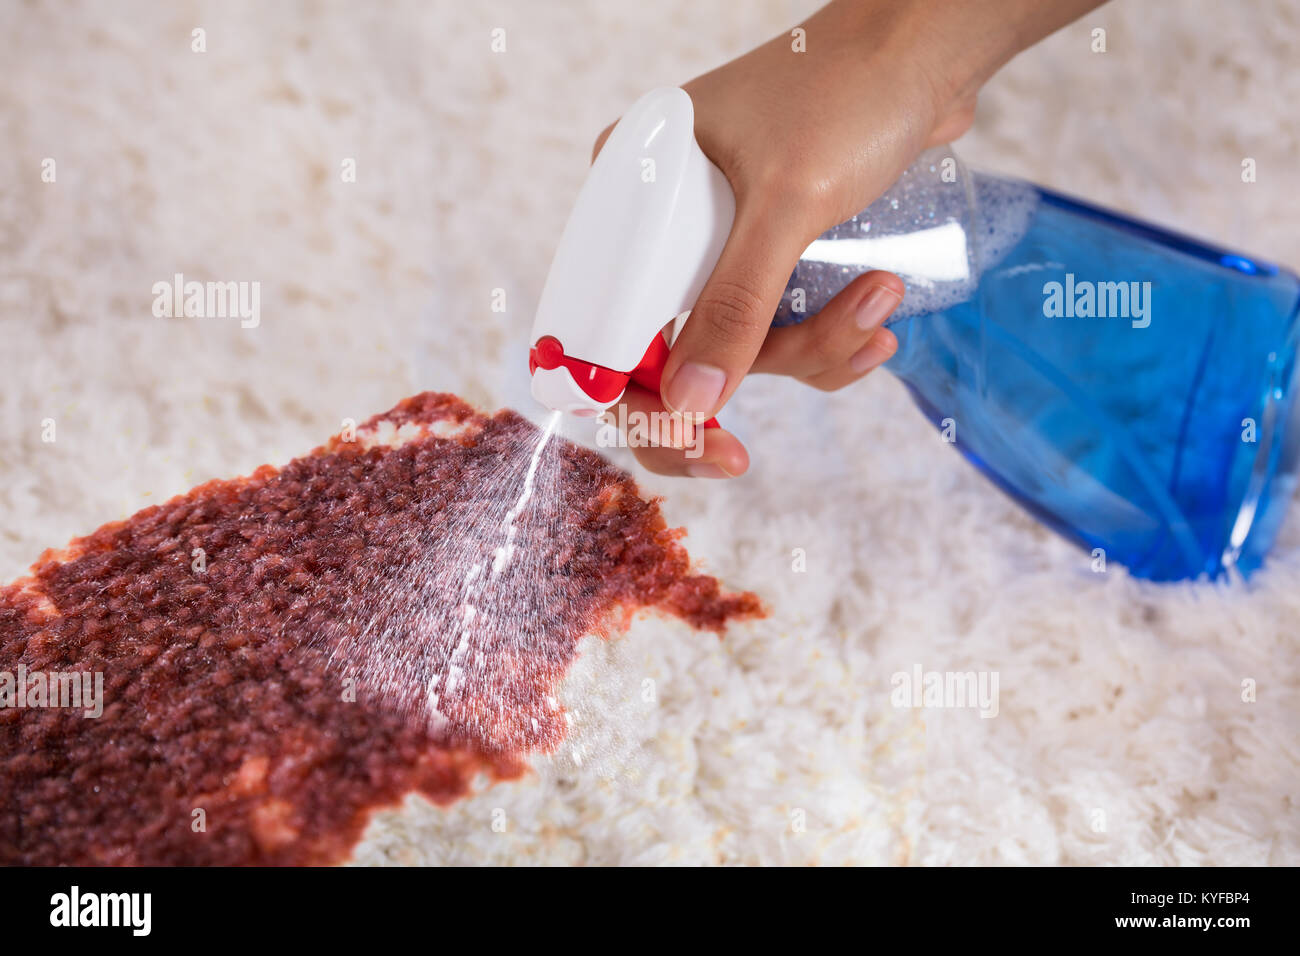 Person's Hand Reinigung Fleck auf dem Teppich mit Waschmittel Sprühflasche  Stockfotografie - Alamy